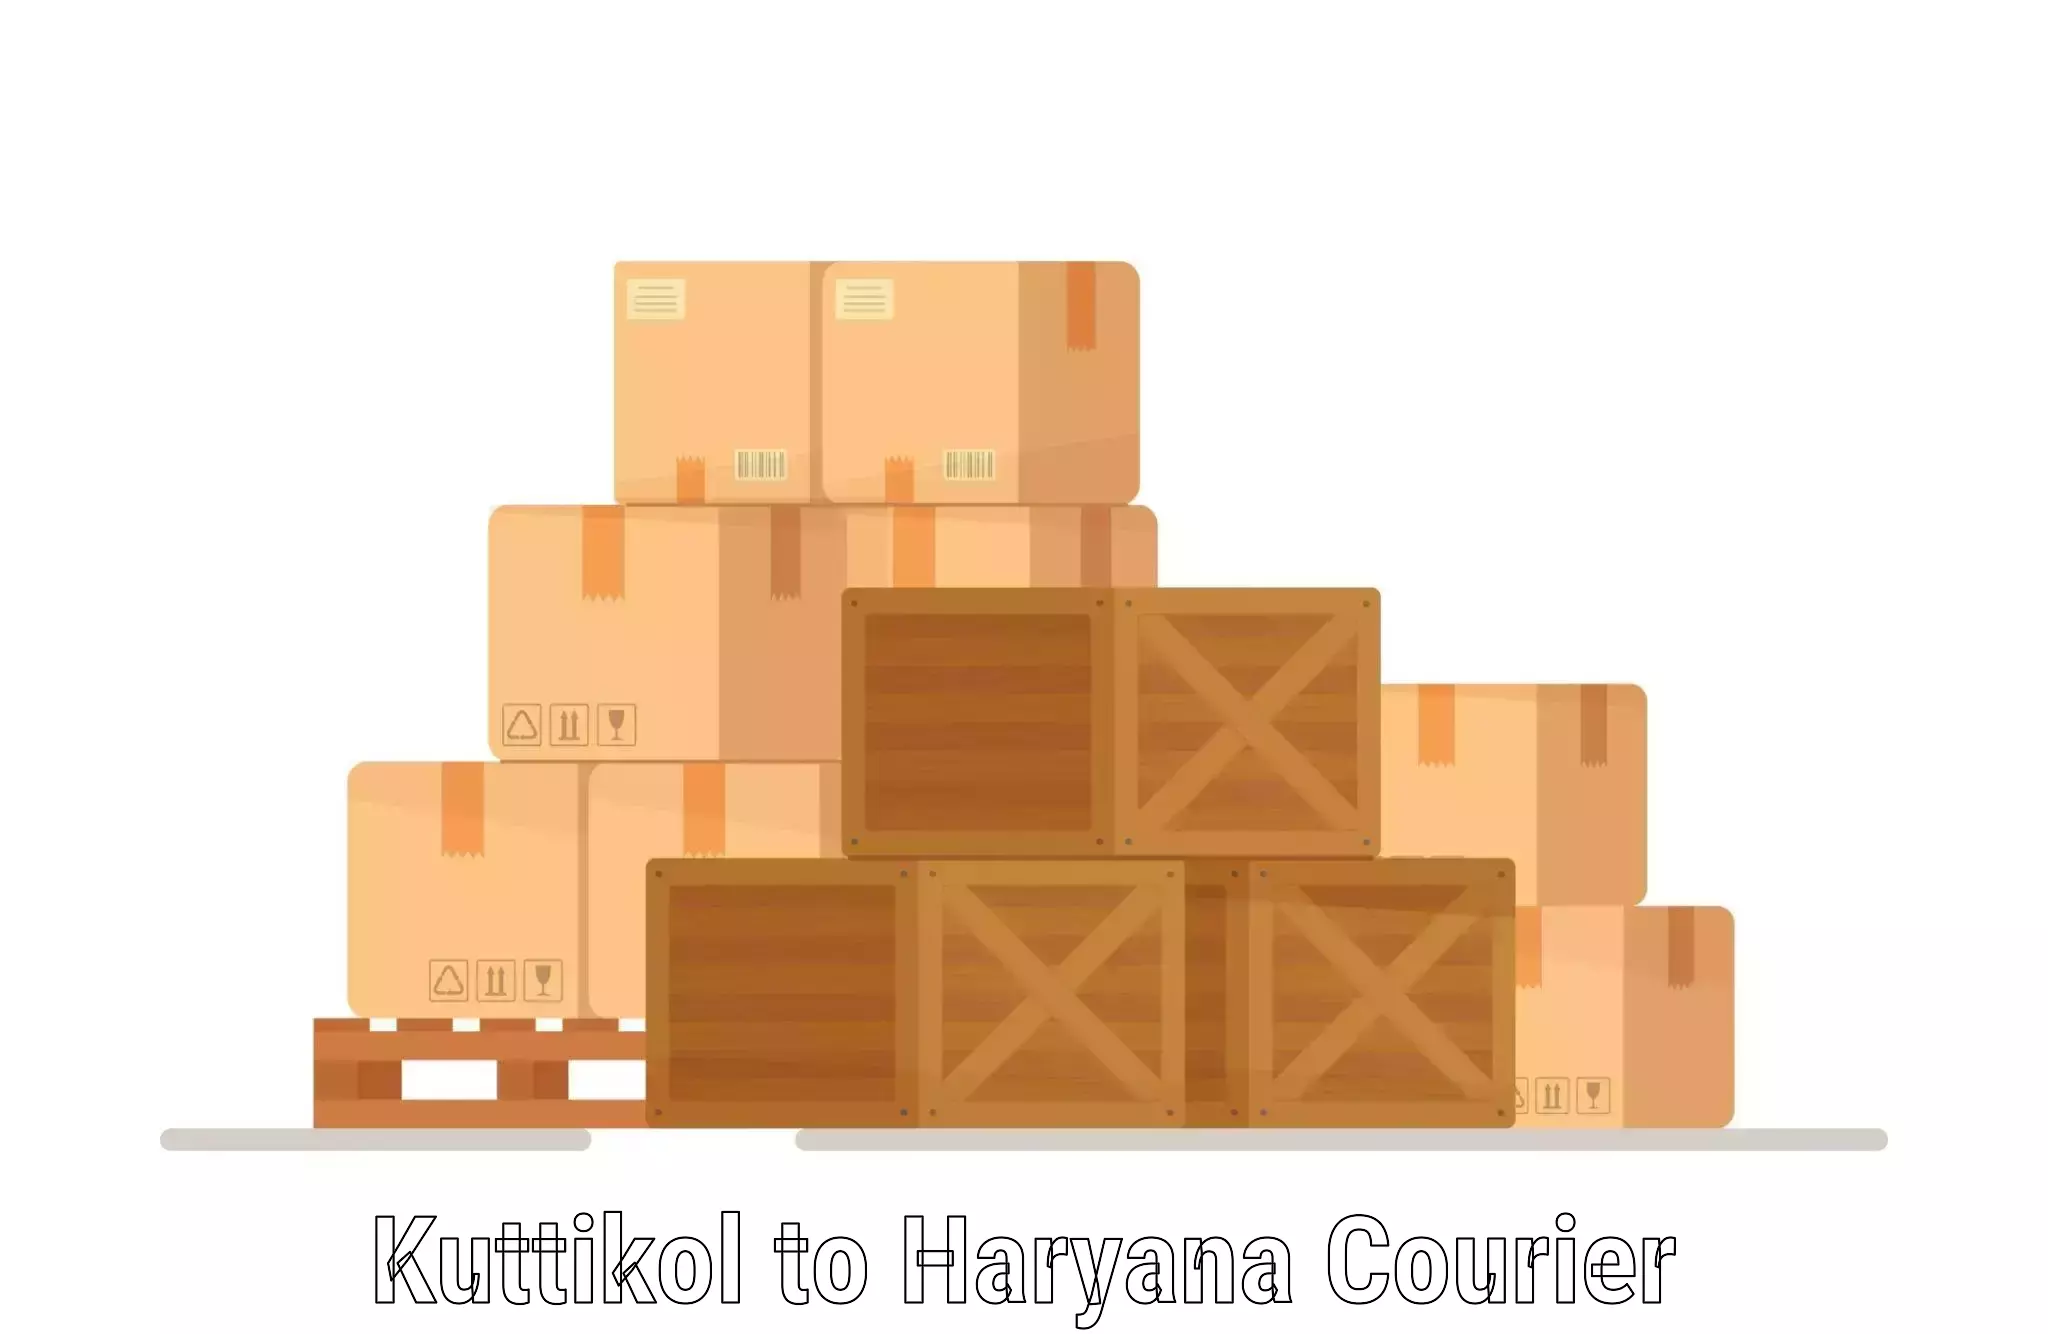 Simplified shipping solutions Kuttikol to Ambala